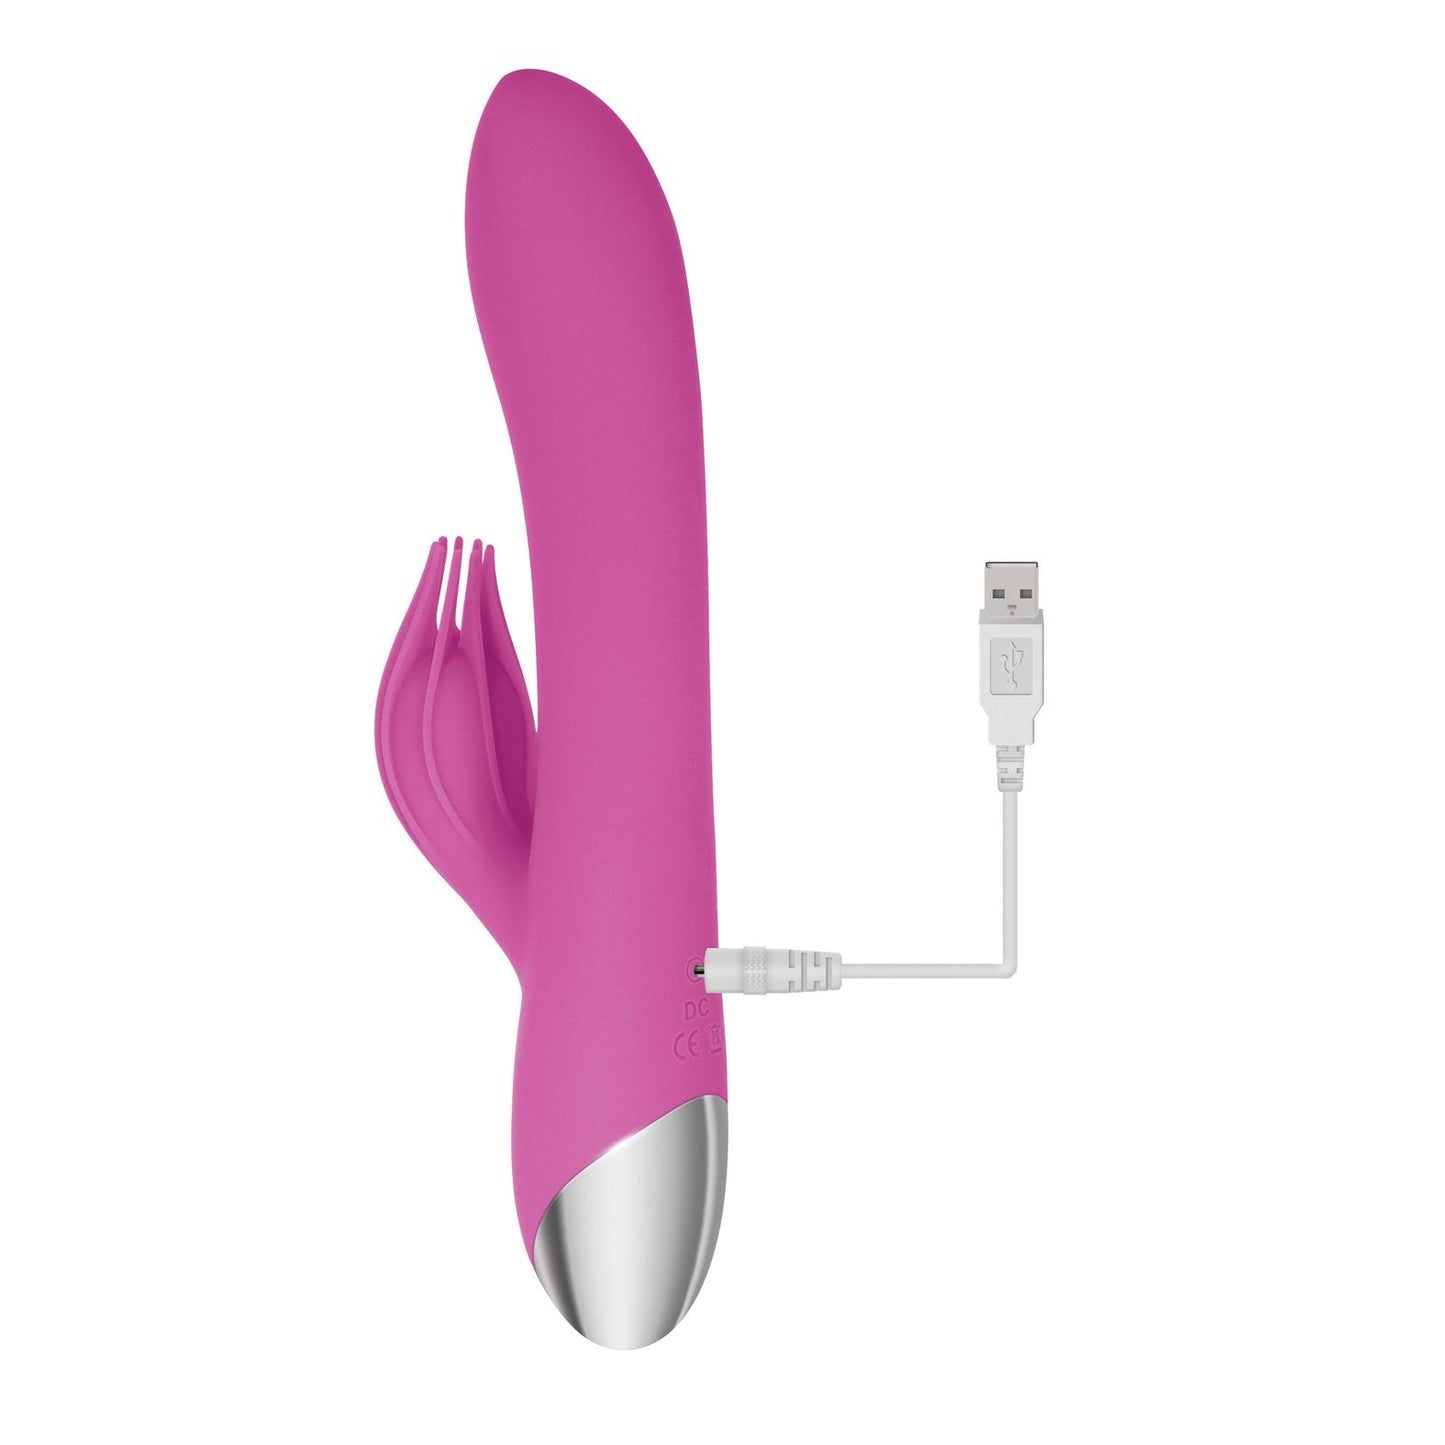 Adam & Eve Eve's Clit Tickling Rabbit G-bliss O-maker - Pink